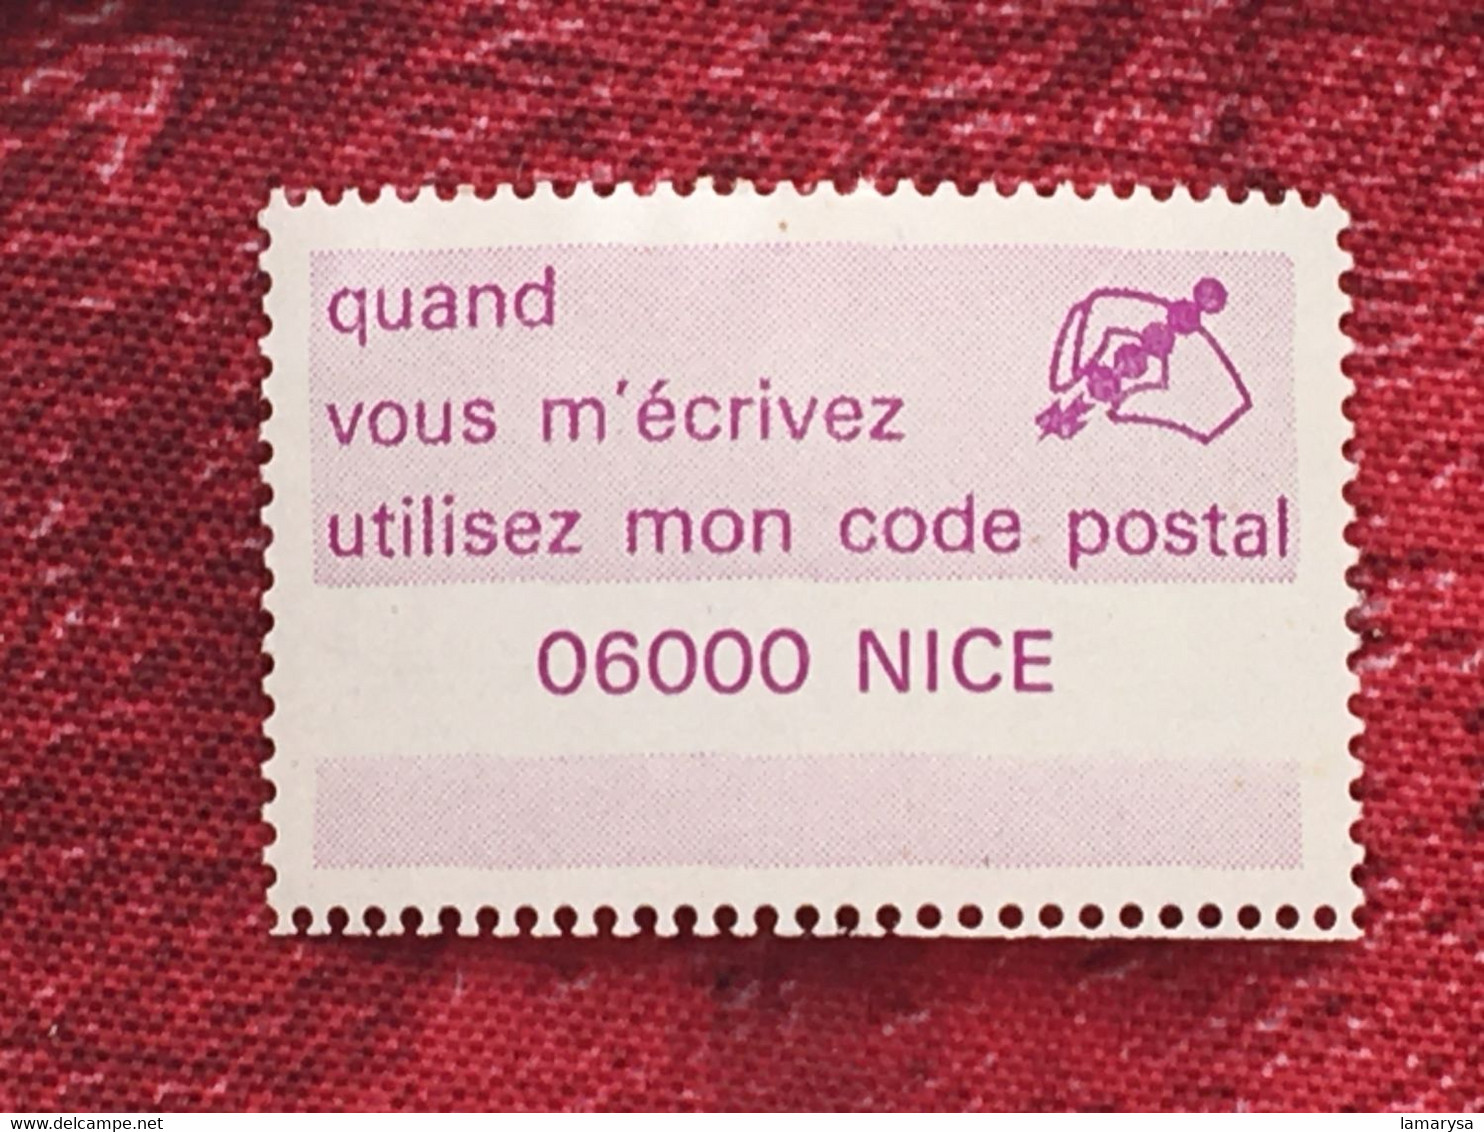 Le Code Postal-Lot 38 Vignette P.T.T. différentes villes-☛Erinnophilie,stamp,Timbre,Label,Sticker-Aufkleber-Bollo-Viñeta